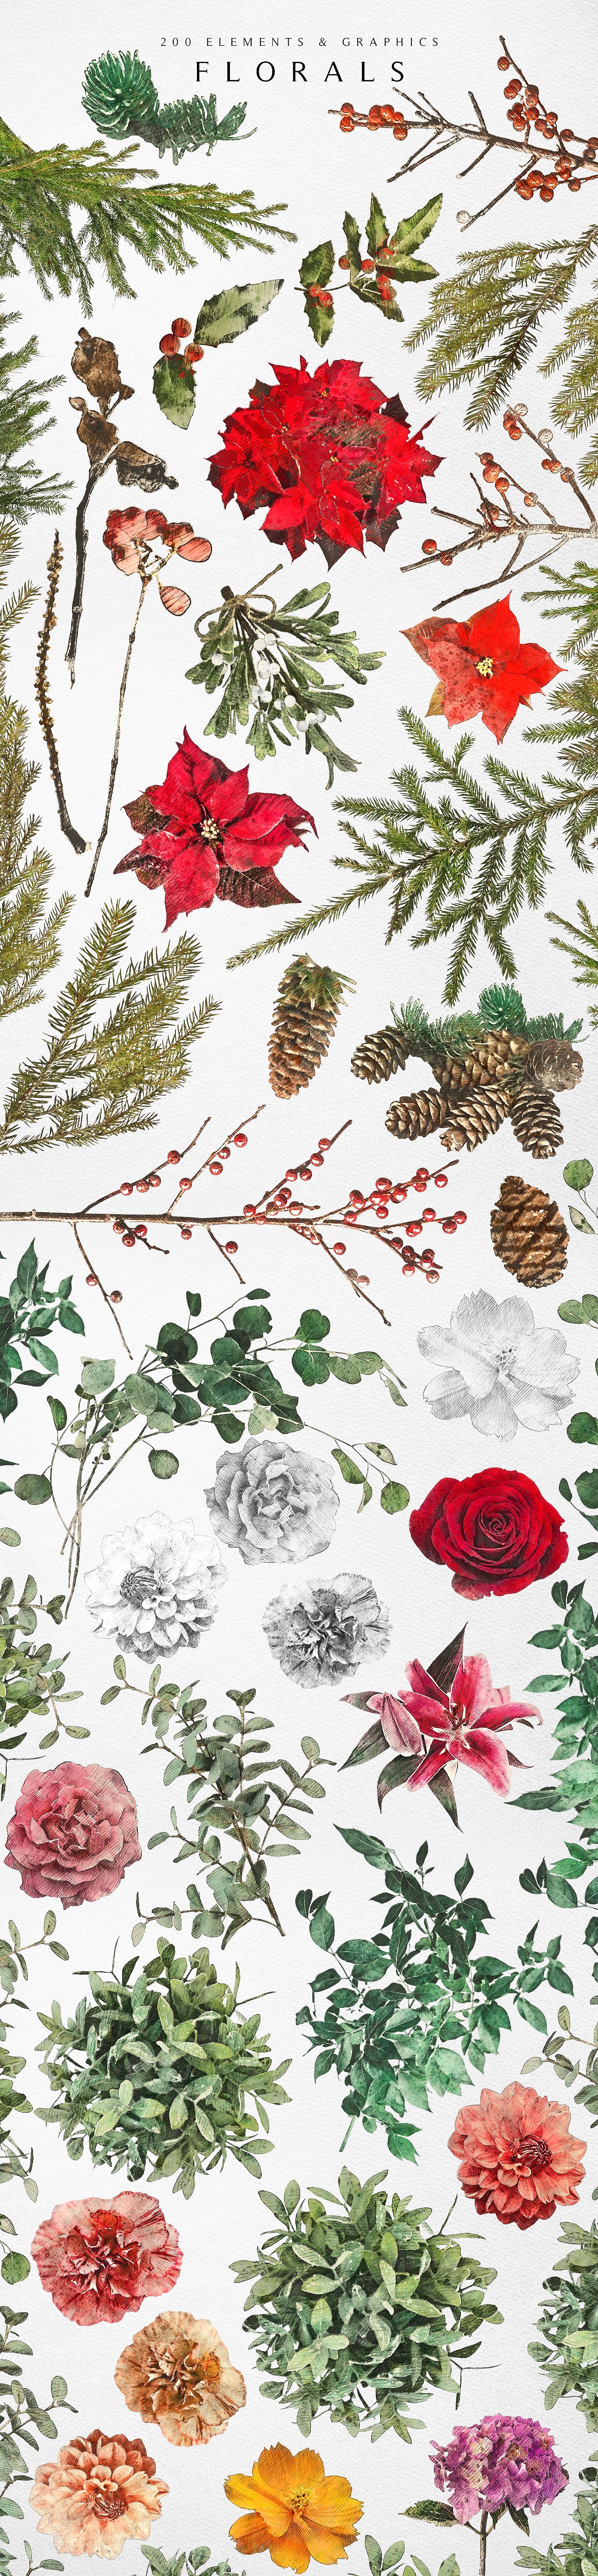 梦如仙境的手绘冬季圣诞节元素图案集 Winter Wonderland Designer Kit插图10